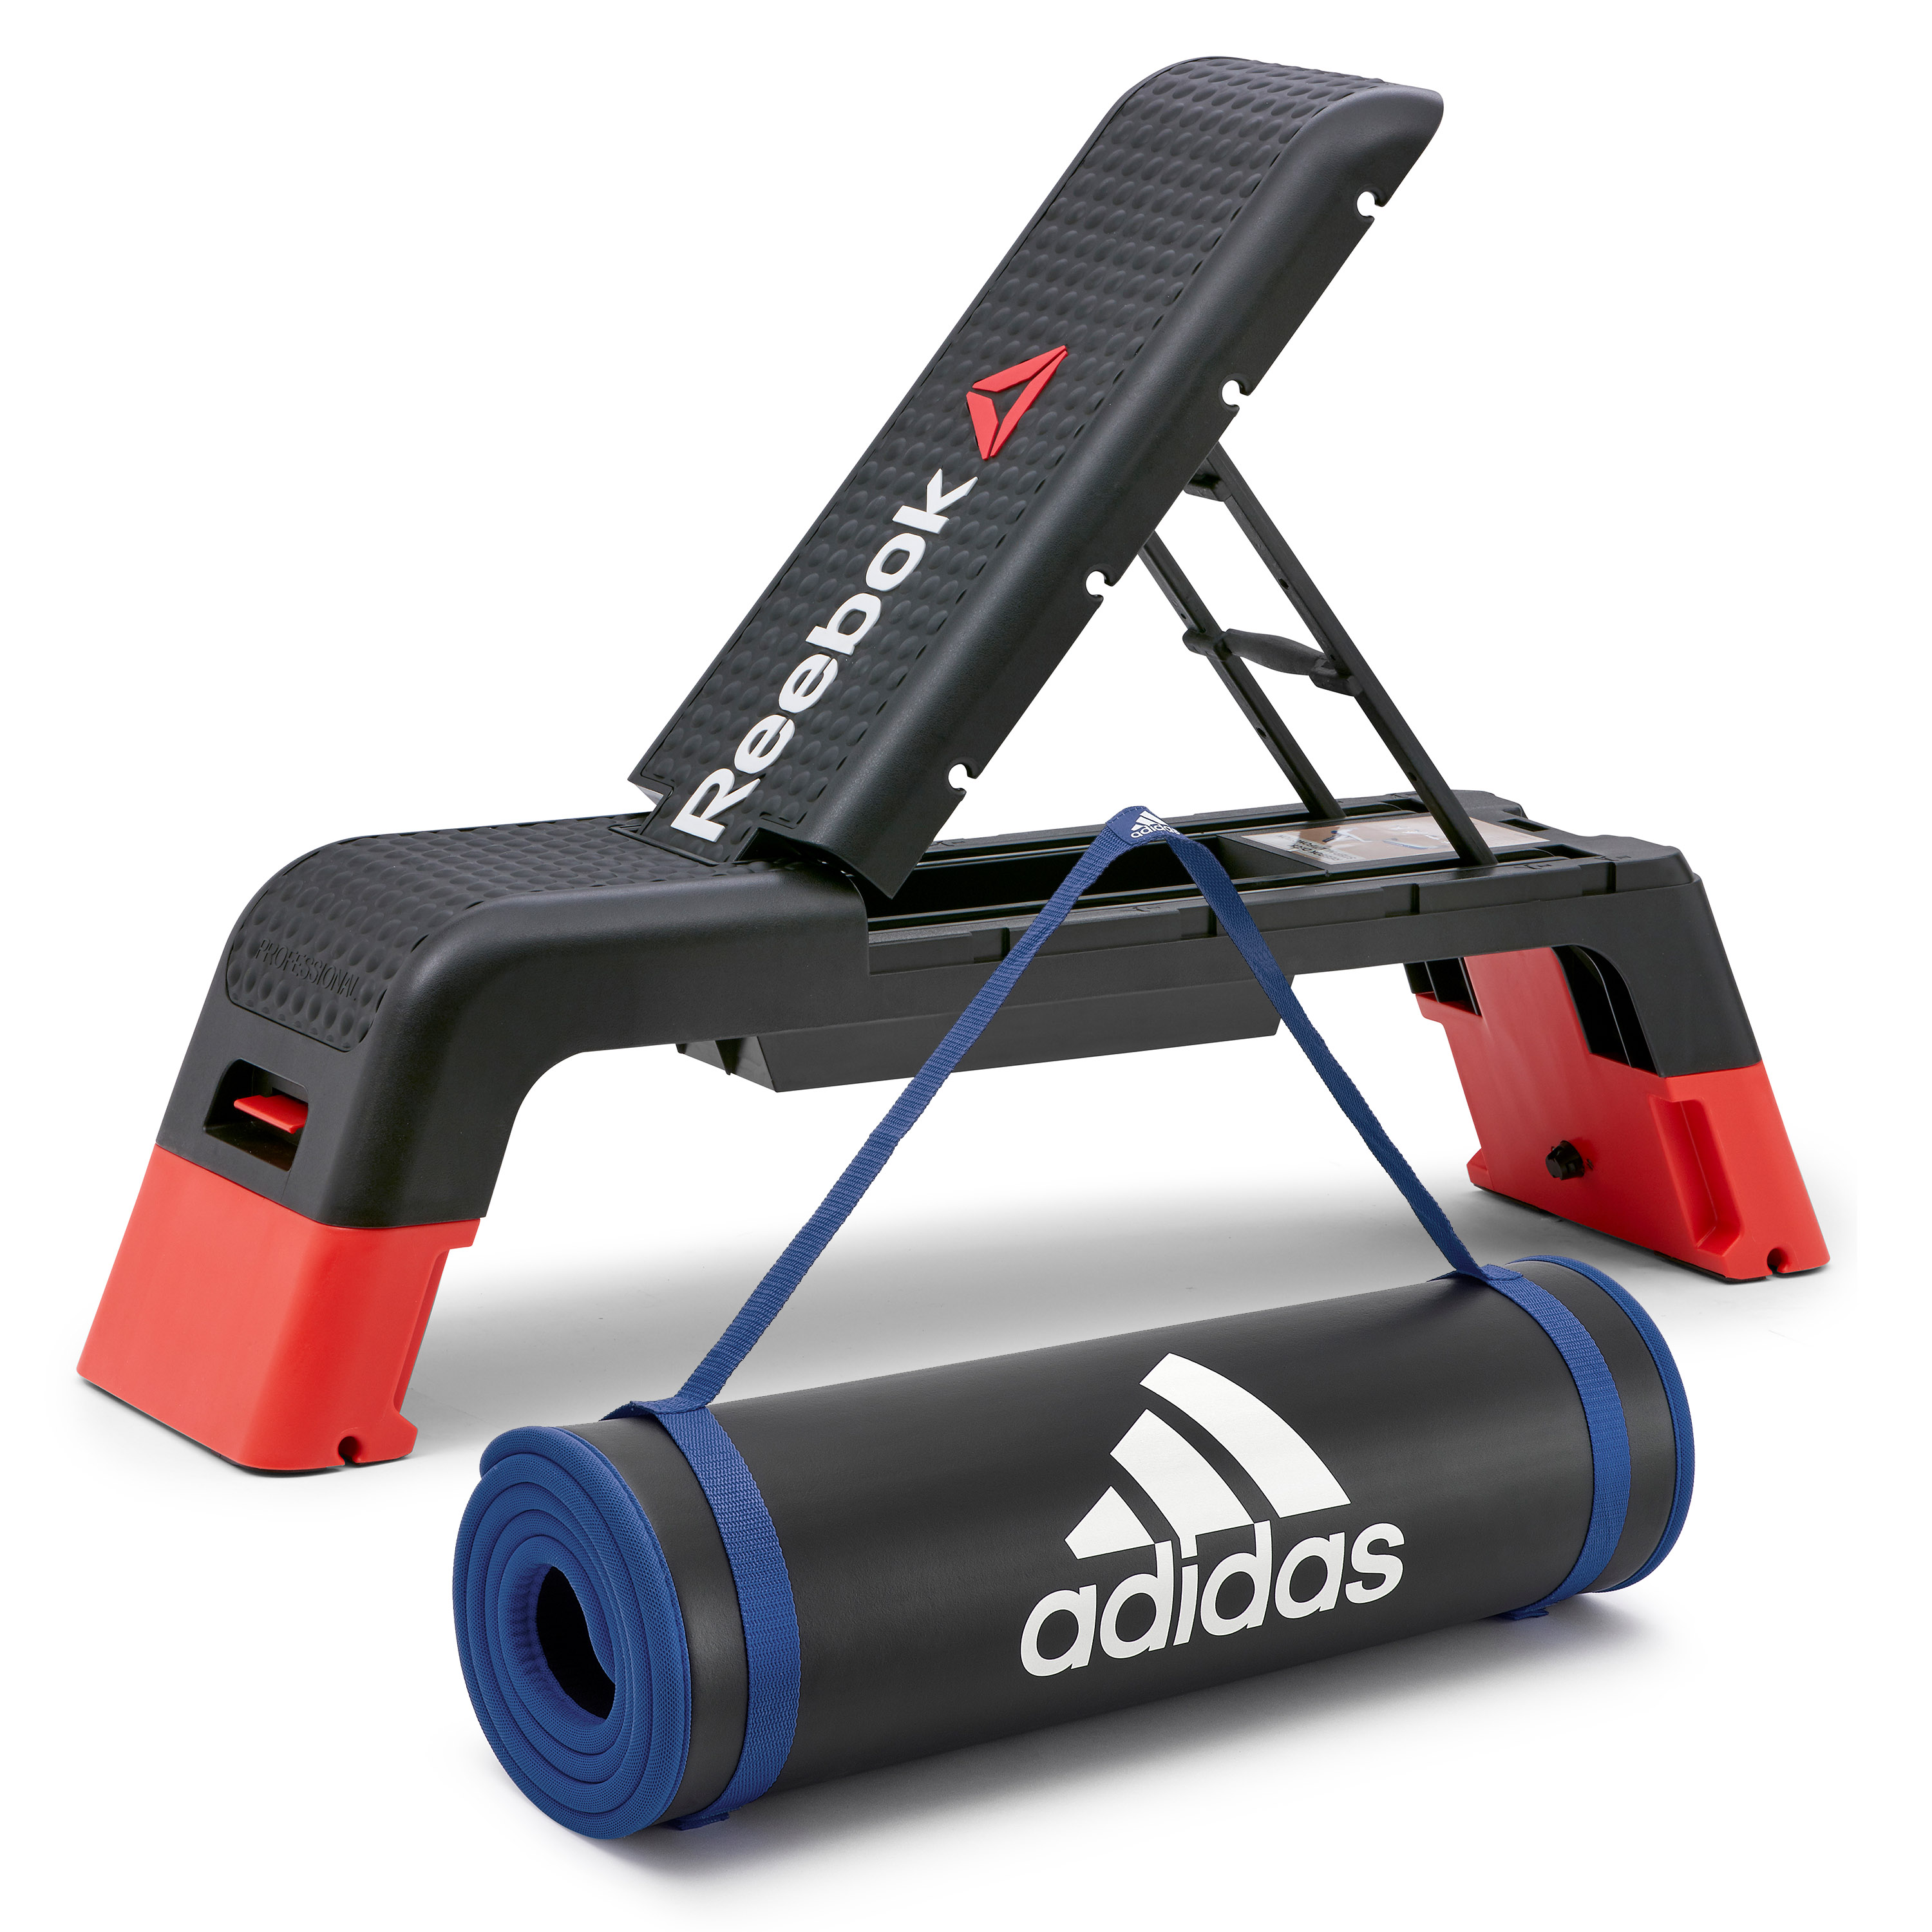 adidas fitness equipment